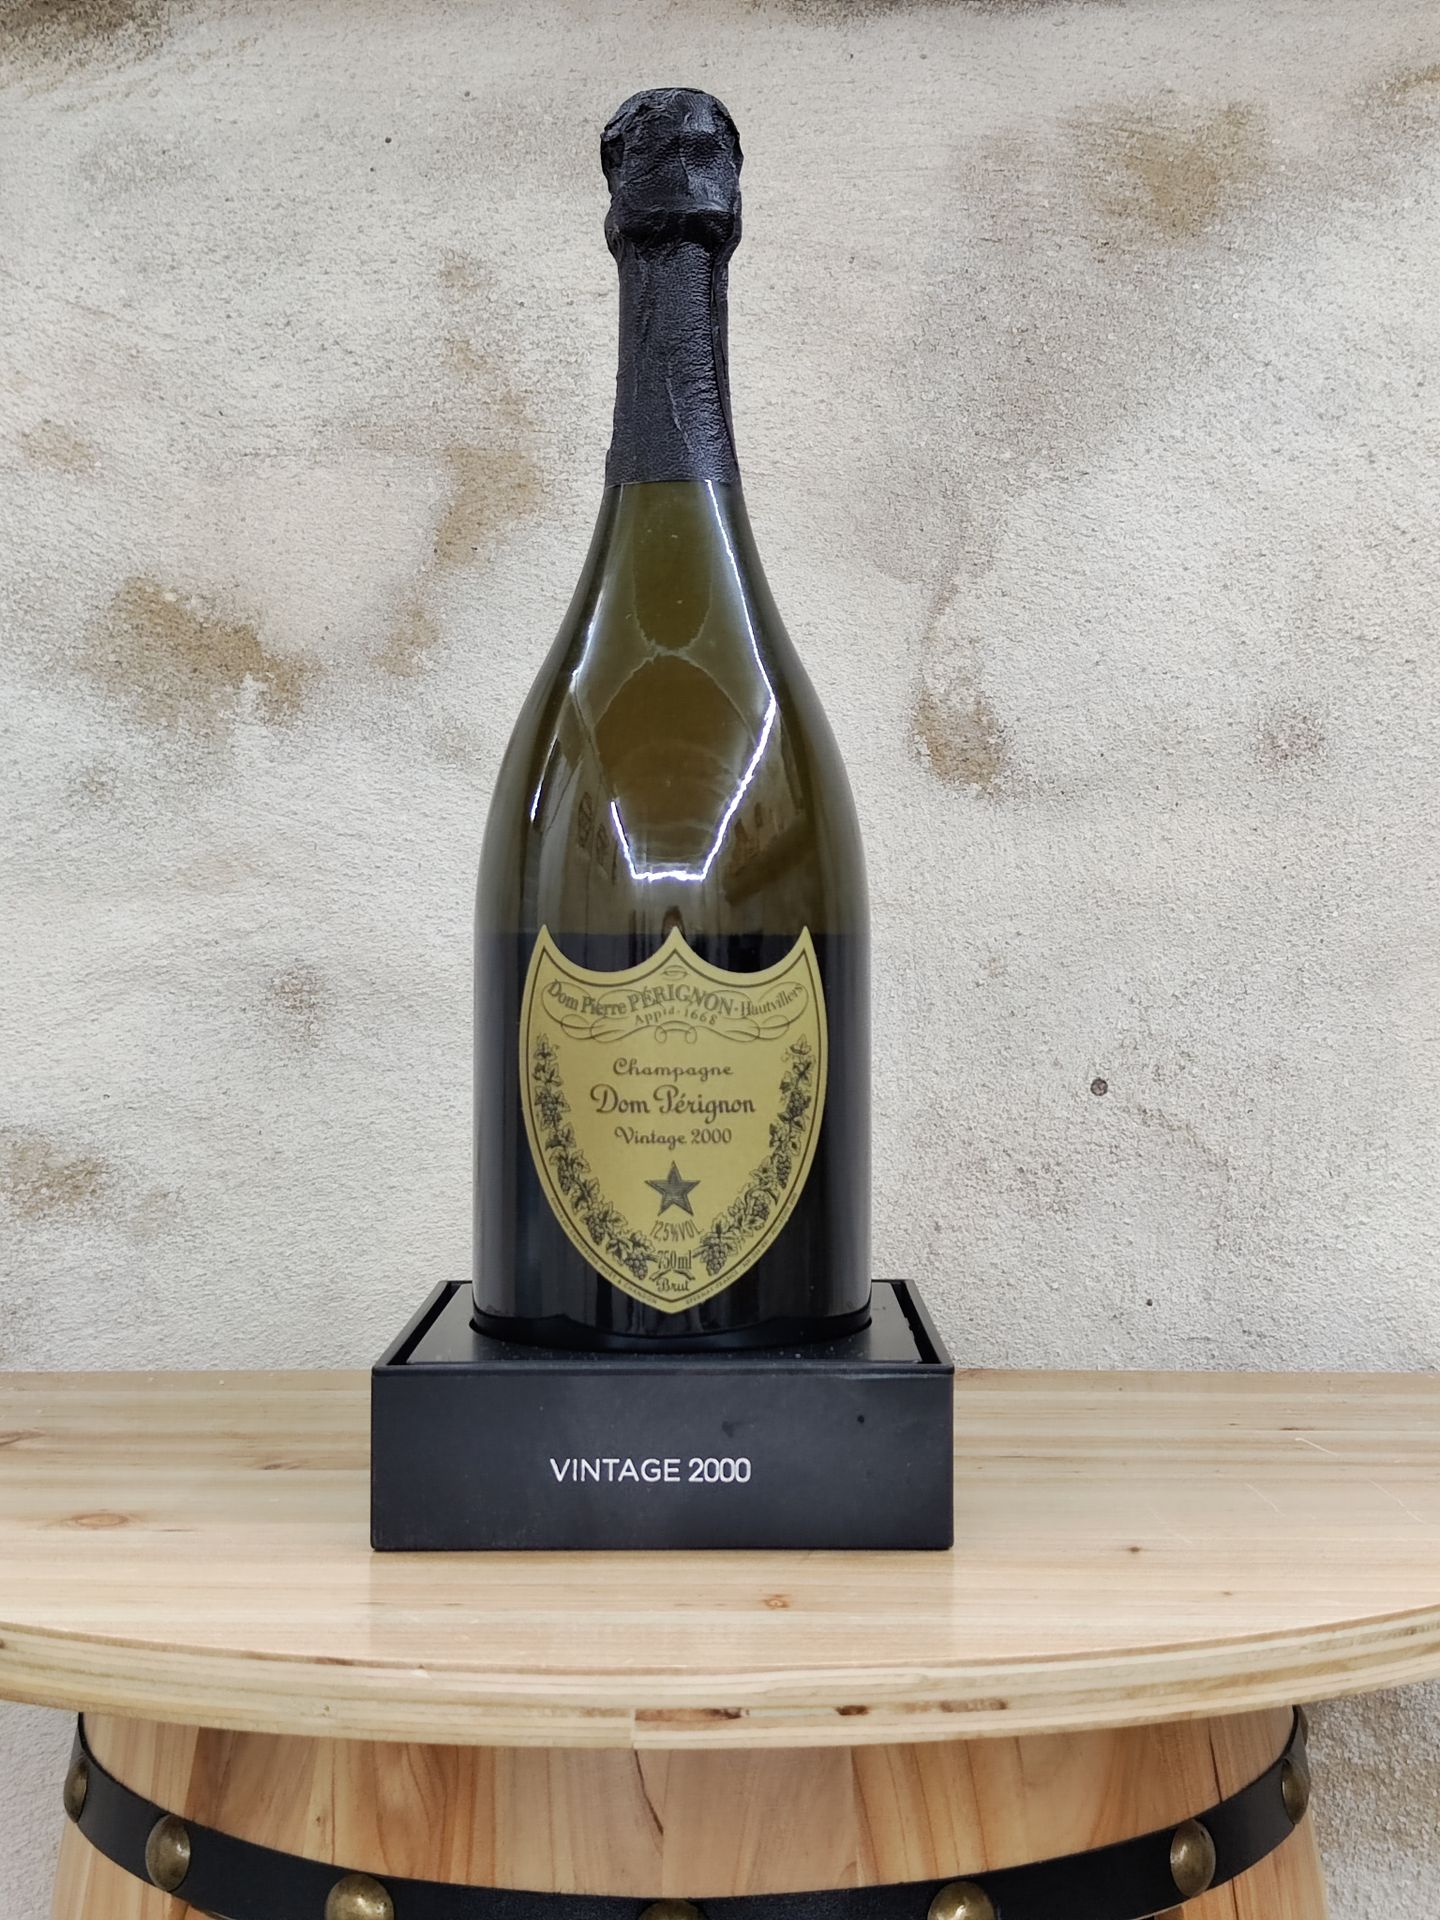 Null 1 瓶 DOM PERIGNON 2000年份香槟。
包装盒内。